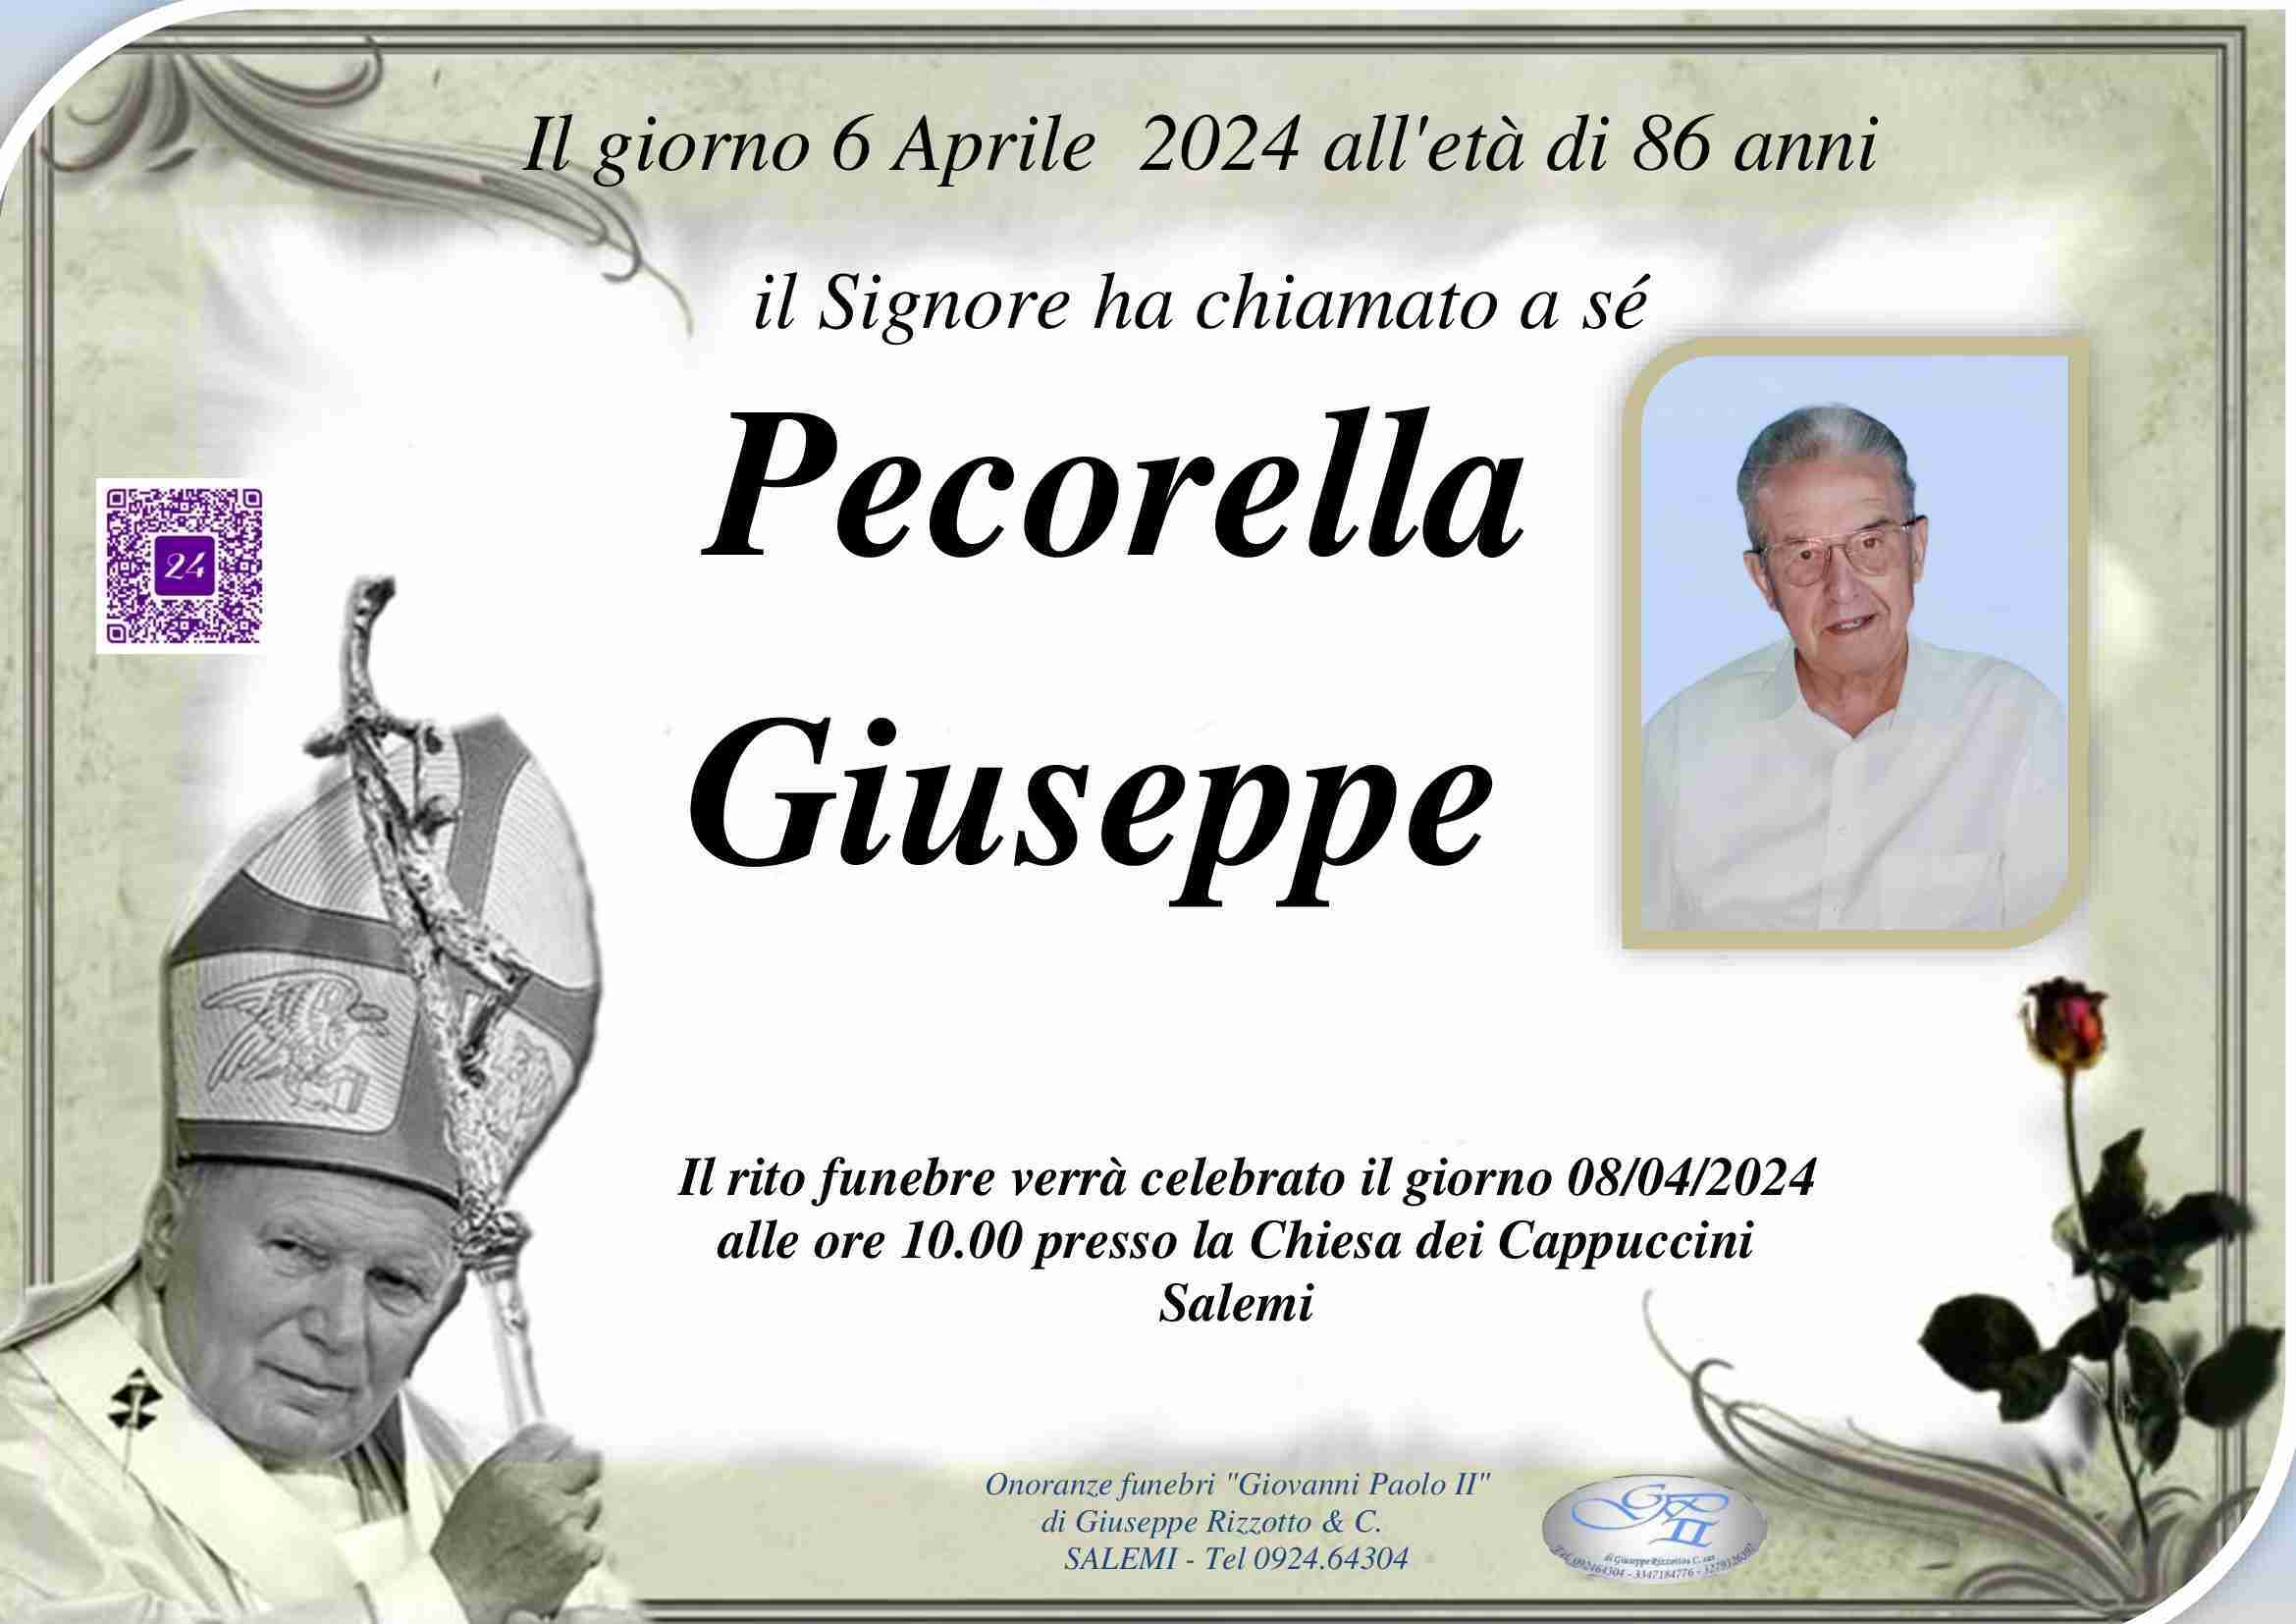 Giuseppe Pecorella